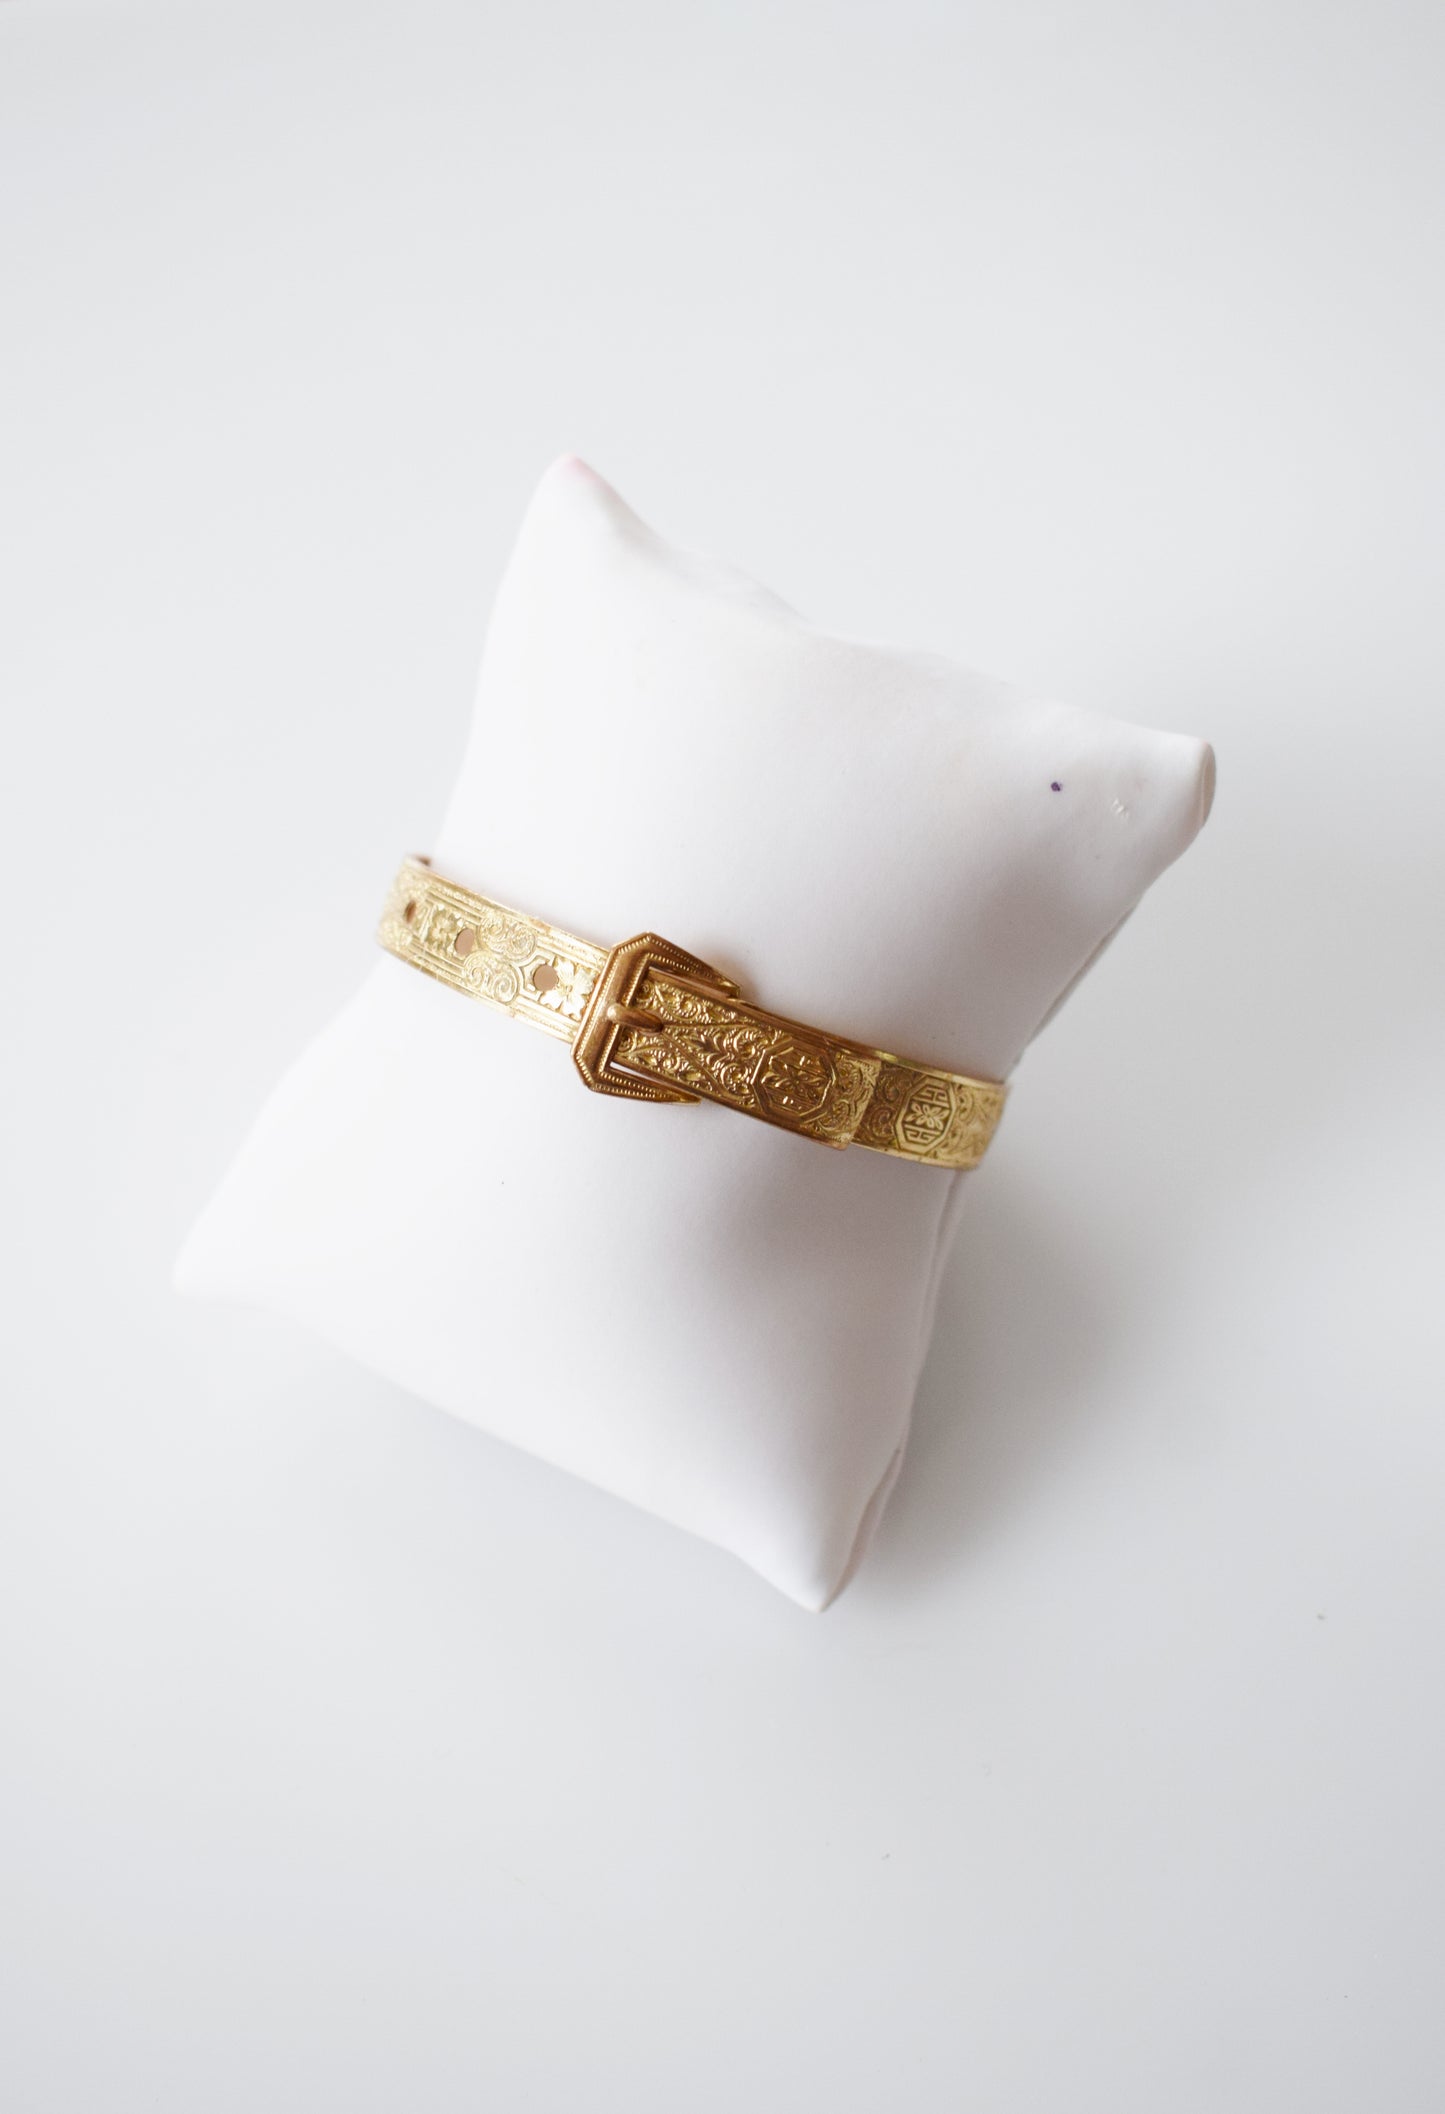 Victorian Revival Gold Buckle Bangle Bracelet